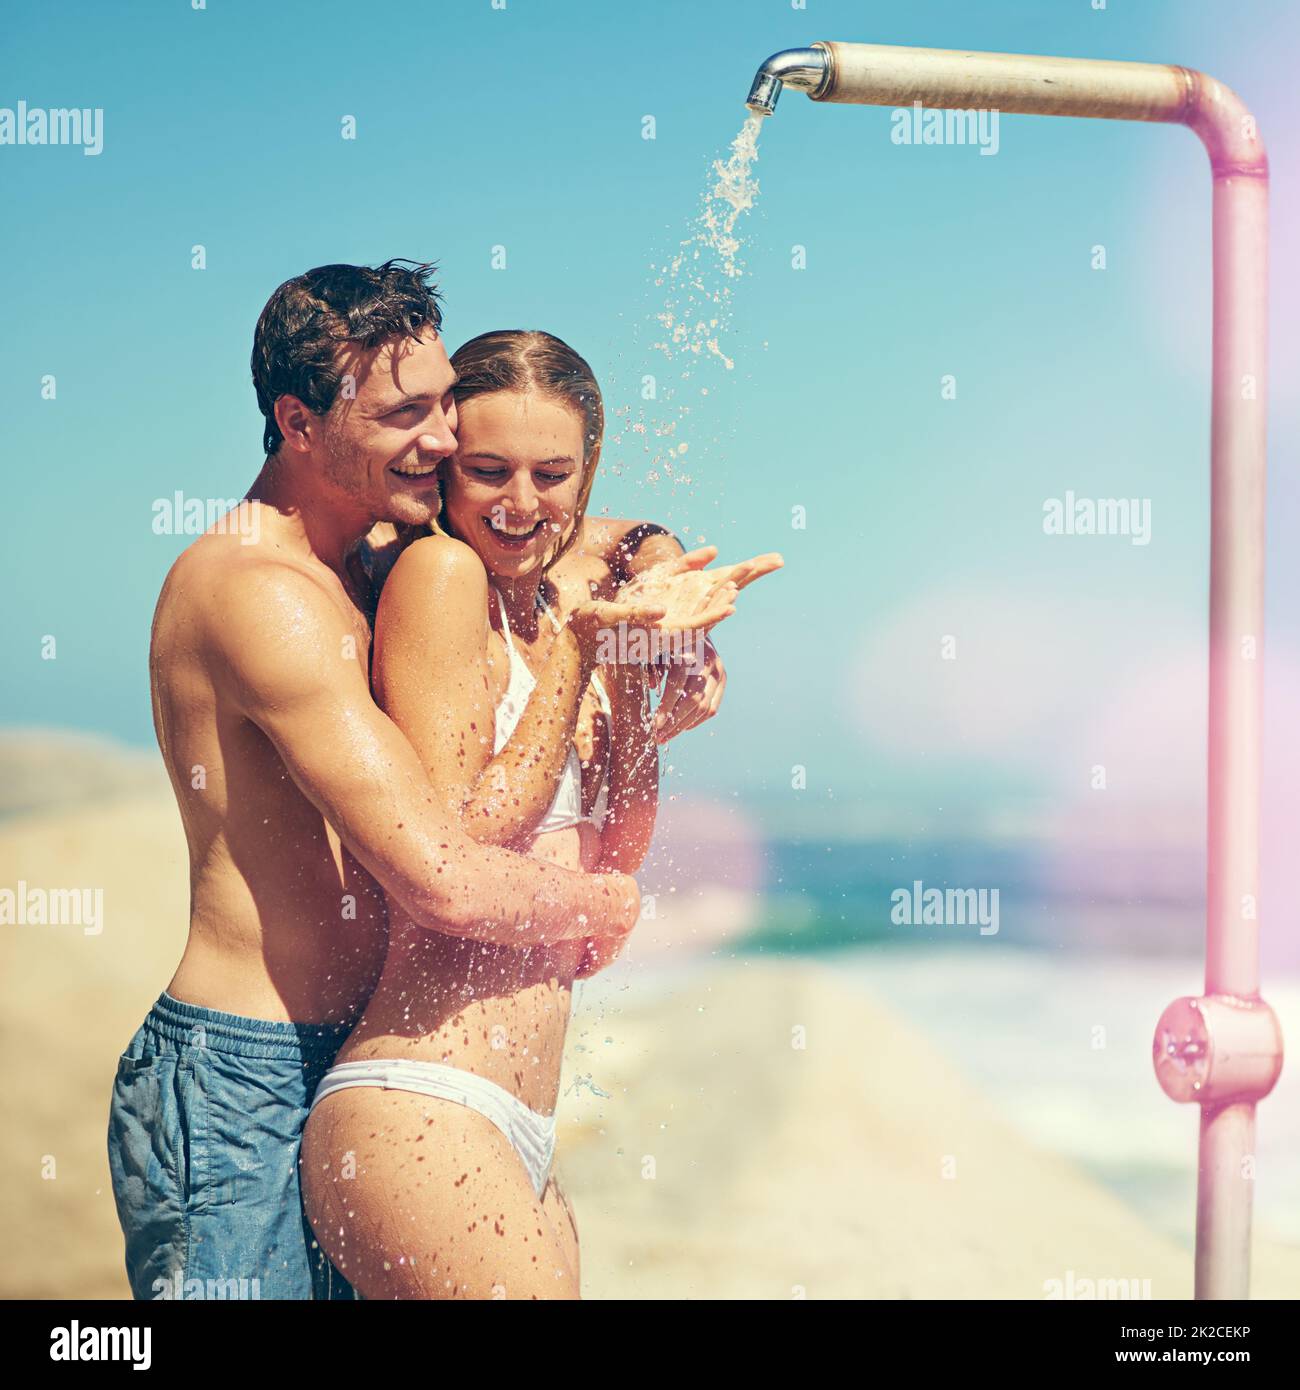 Du sollst mich waschen. Kurzer Schuss eines liebevollen jungen Paares, das am Strand duscht. Stockfoto